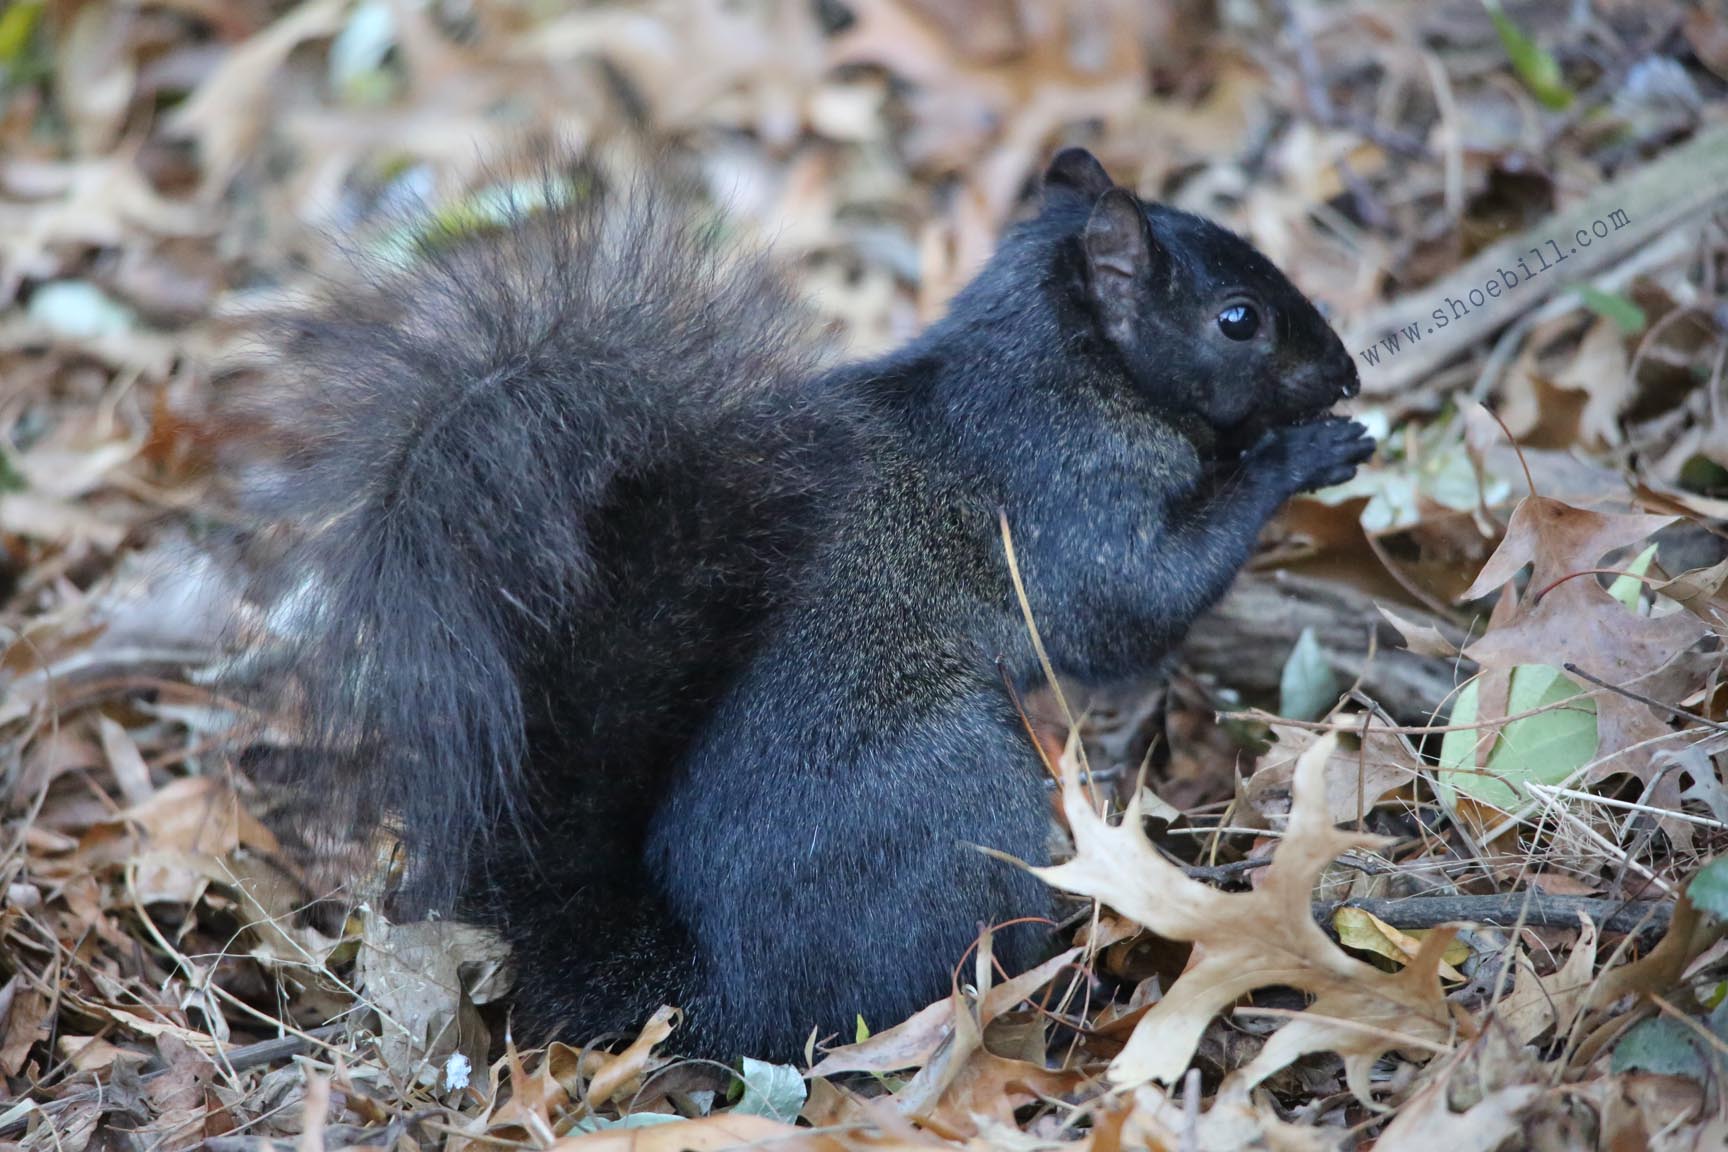 Black squirrel